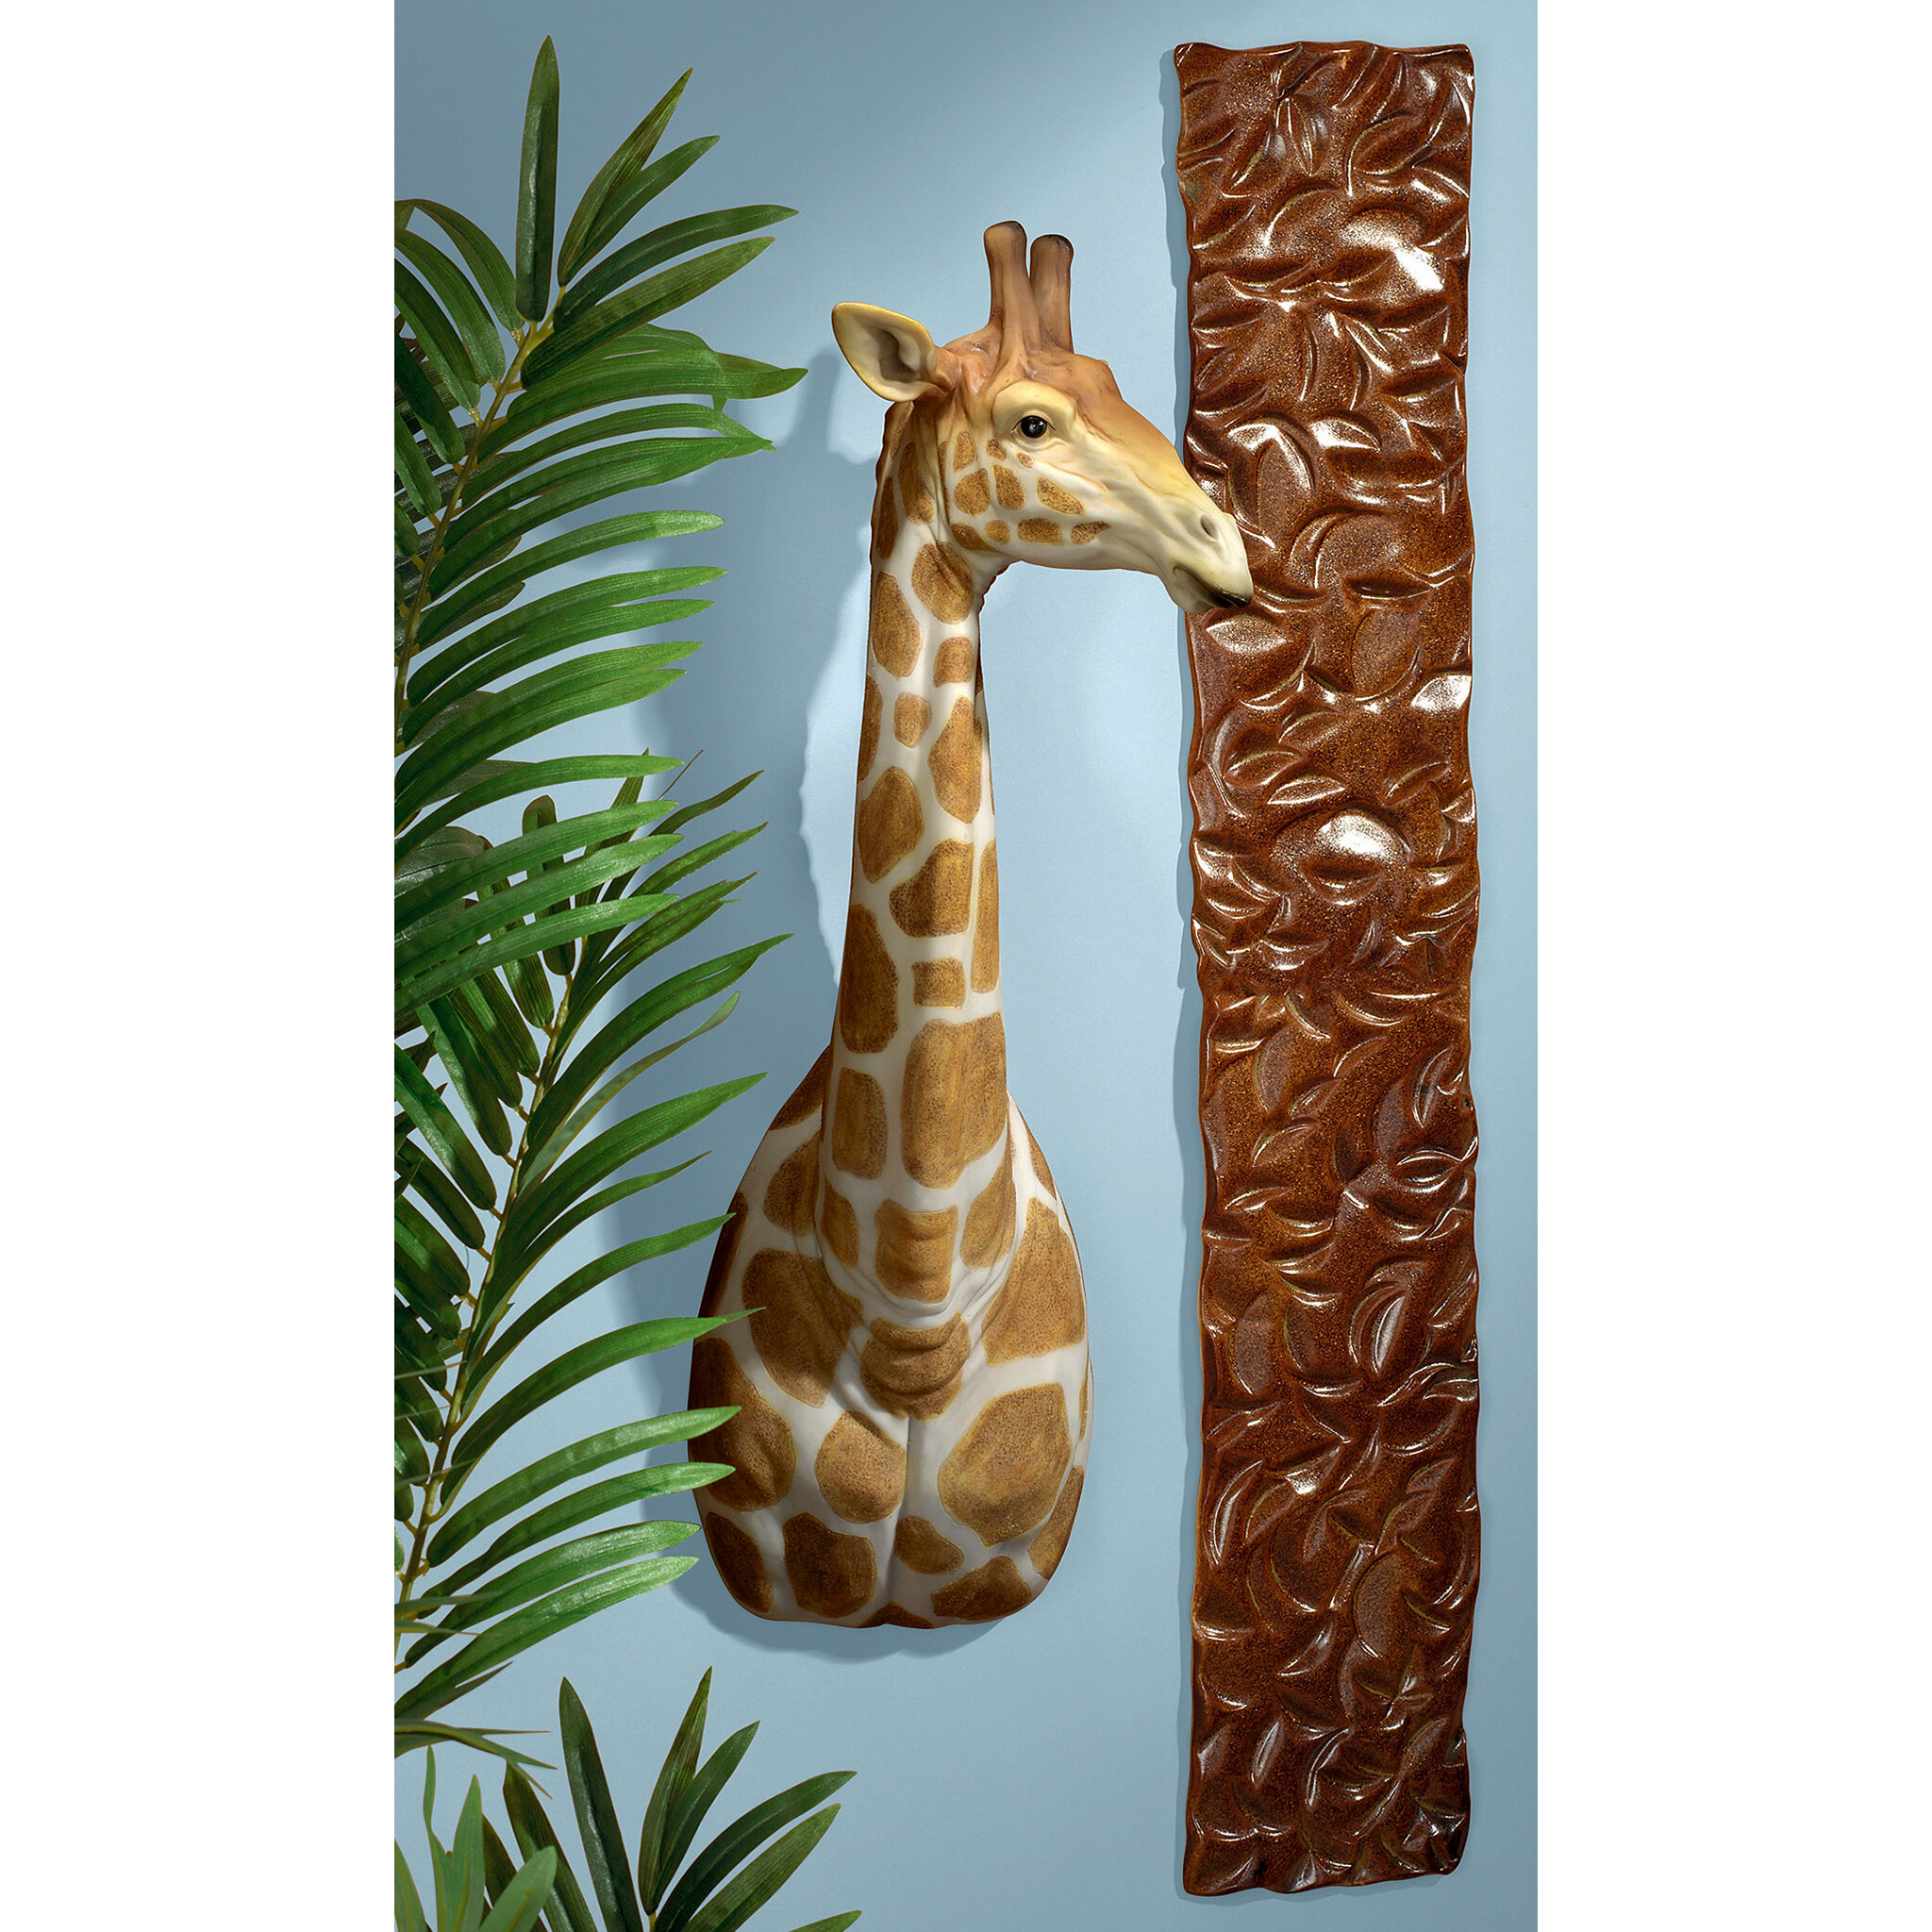 Elongated Zebra & Giraffe Masks Wall Sculptures African Savannah Collection 